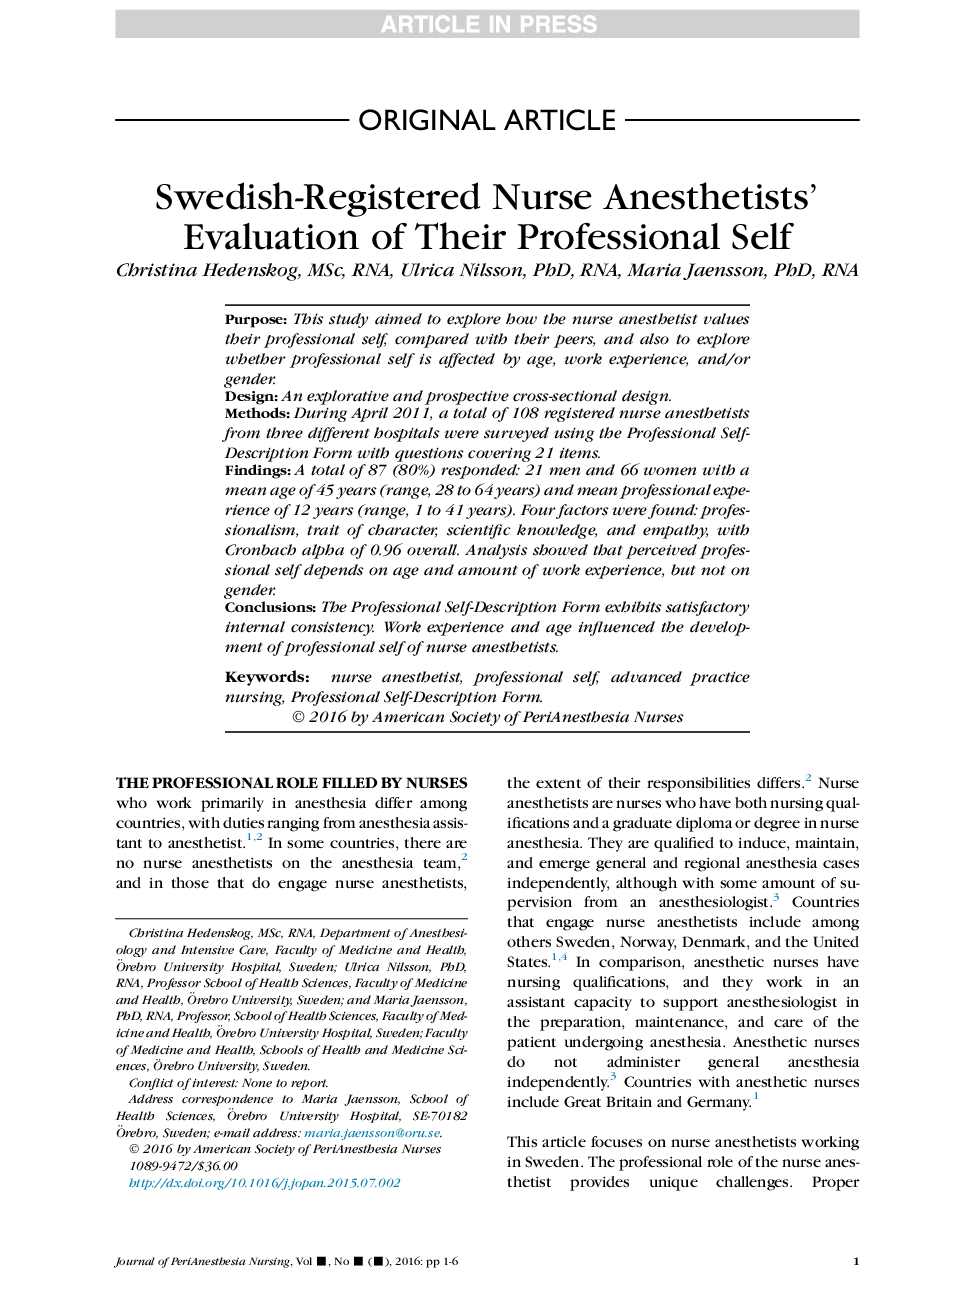 ارزیابی حرفه ای آنستاشیست های پرستار سوئدی از خودشان حرفه ای 